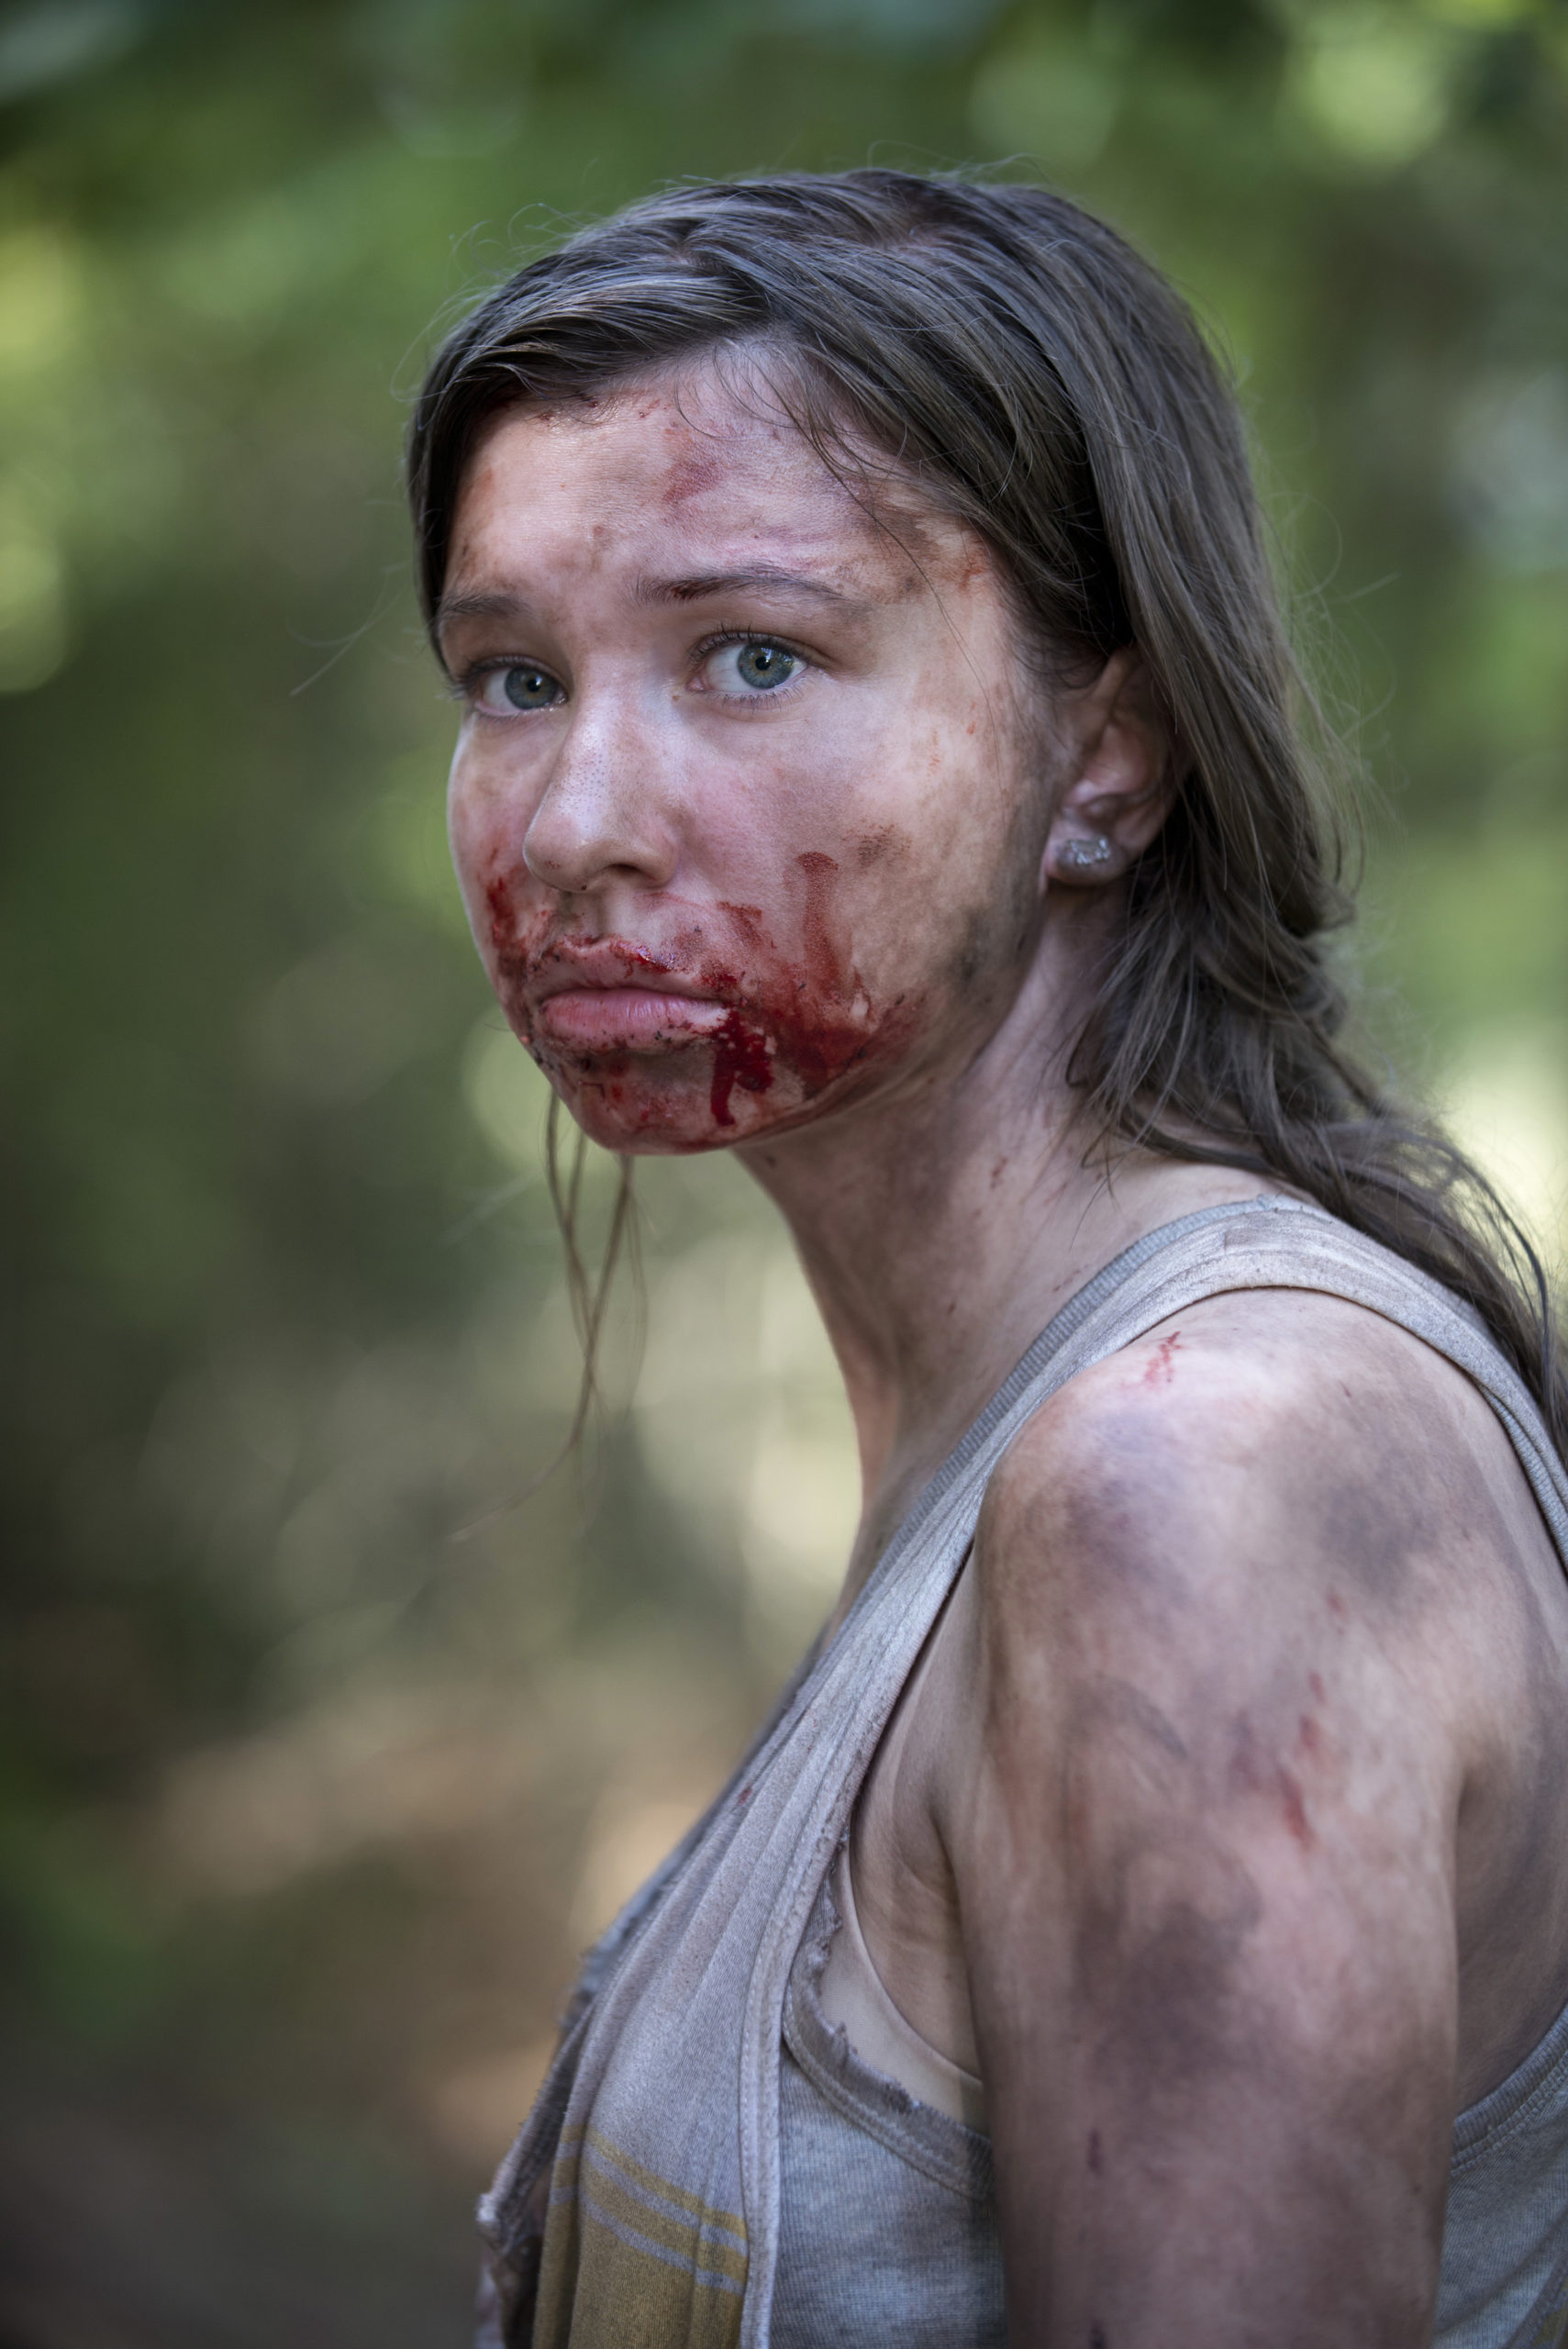 Katelyn Nacon as Enid in The Walking Dead - Season 6, Episode 2